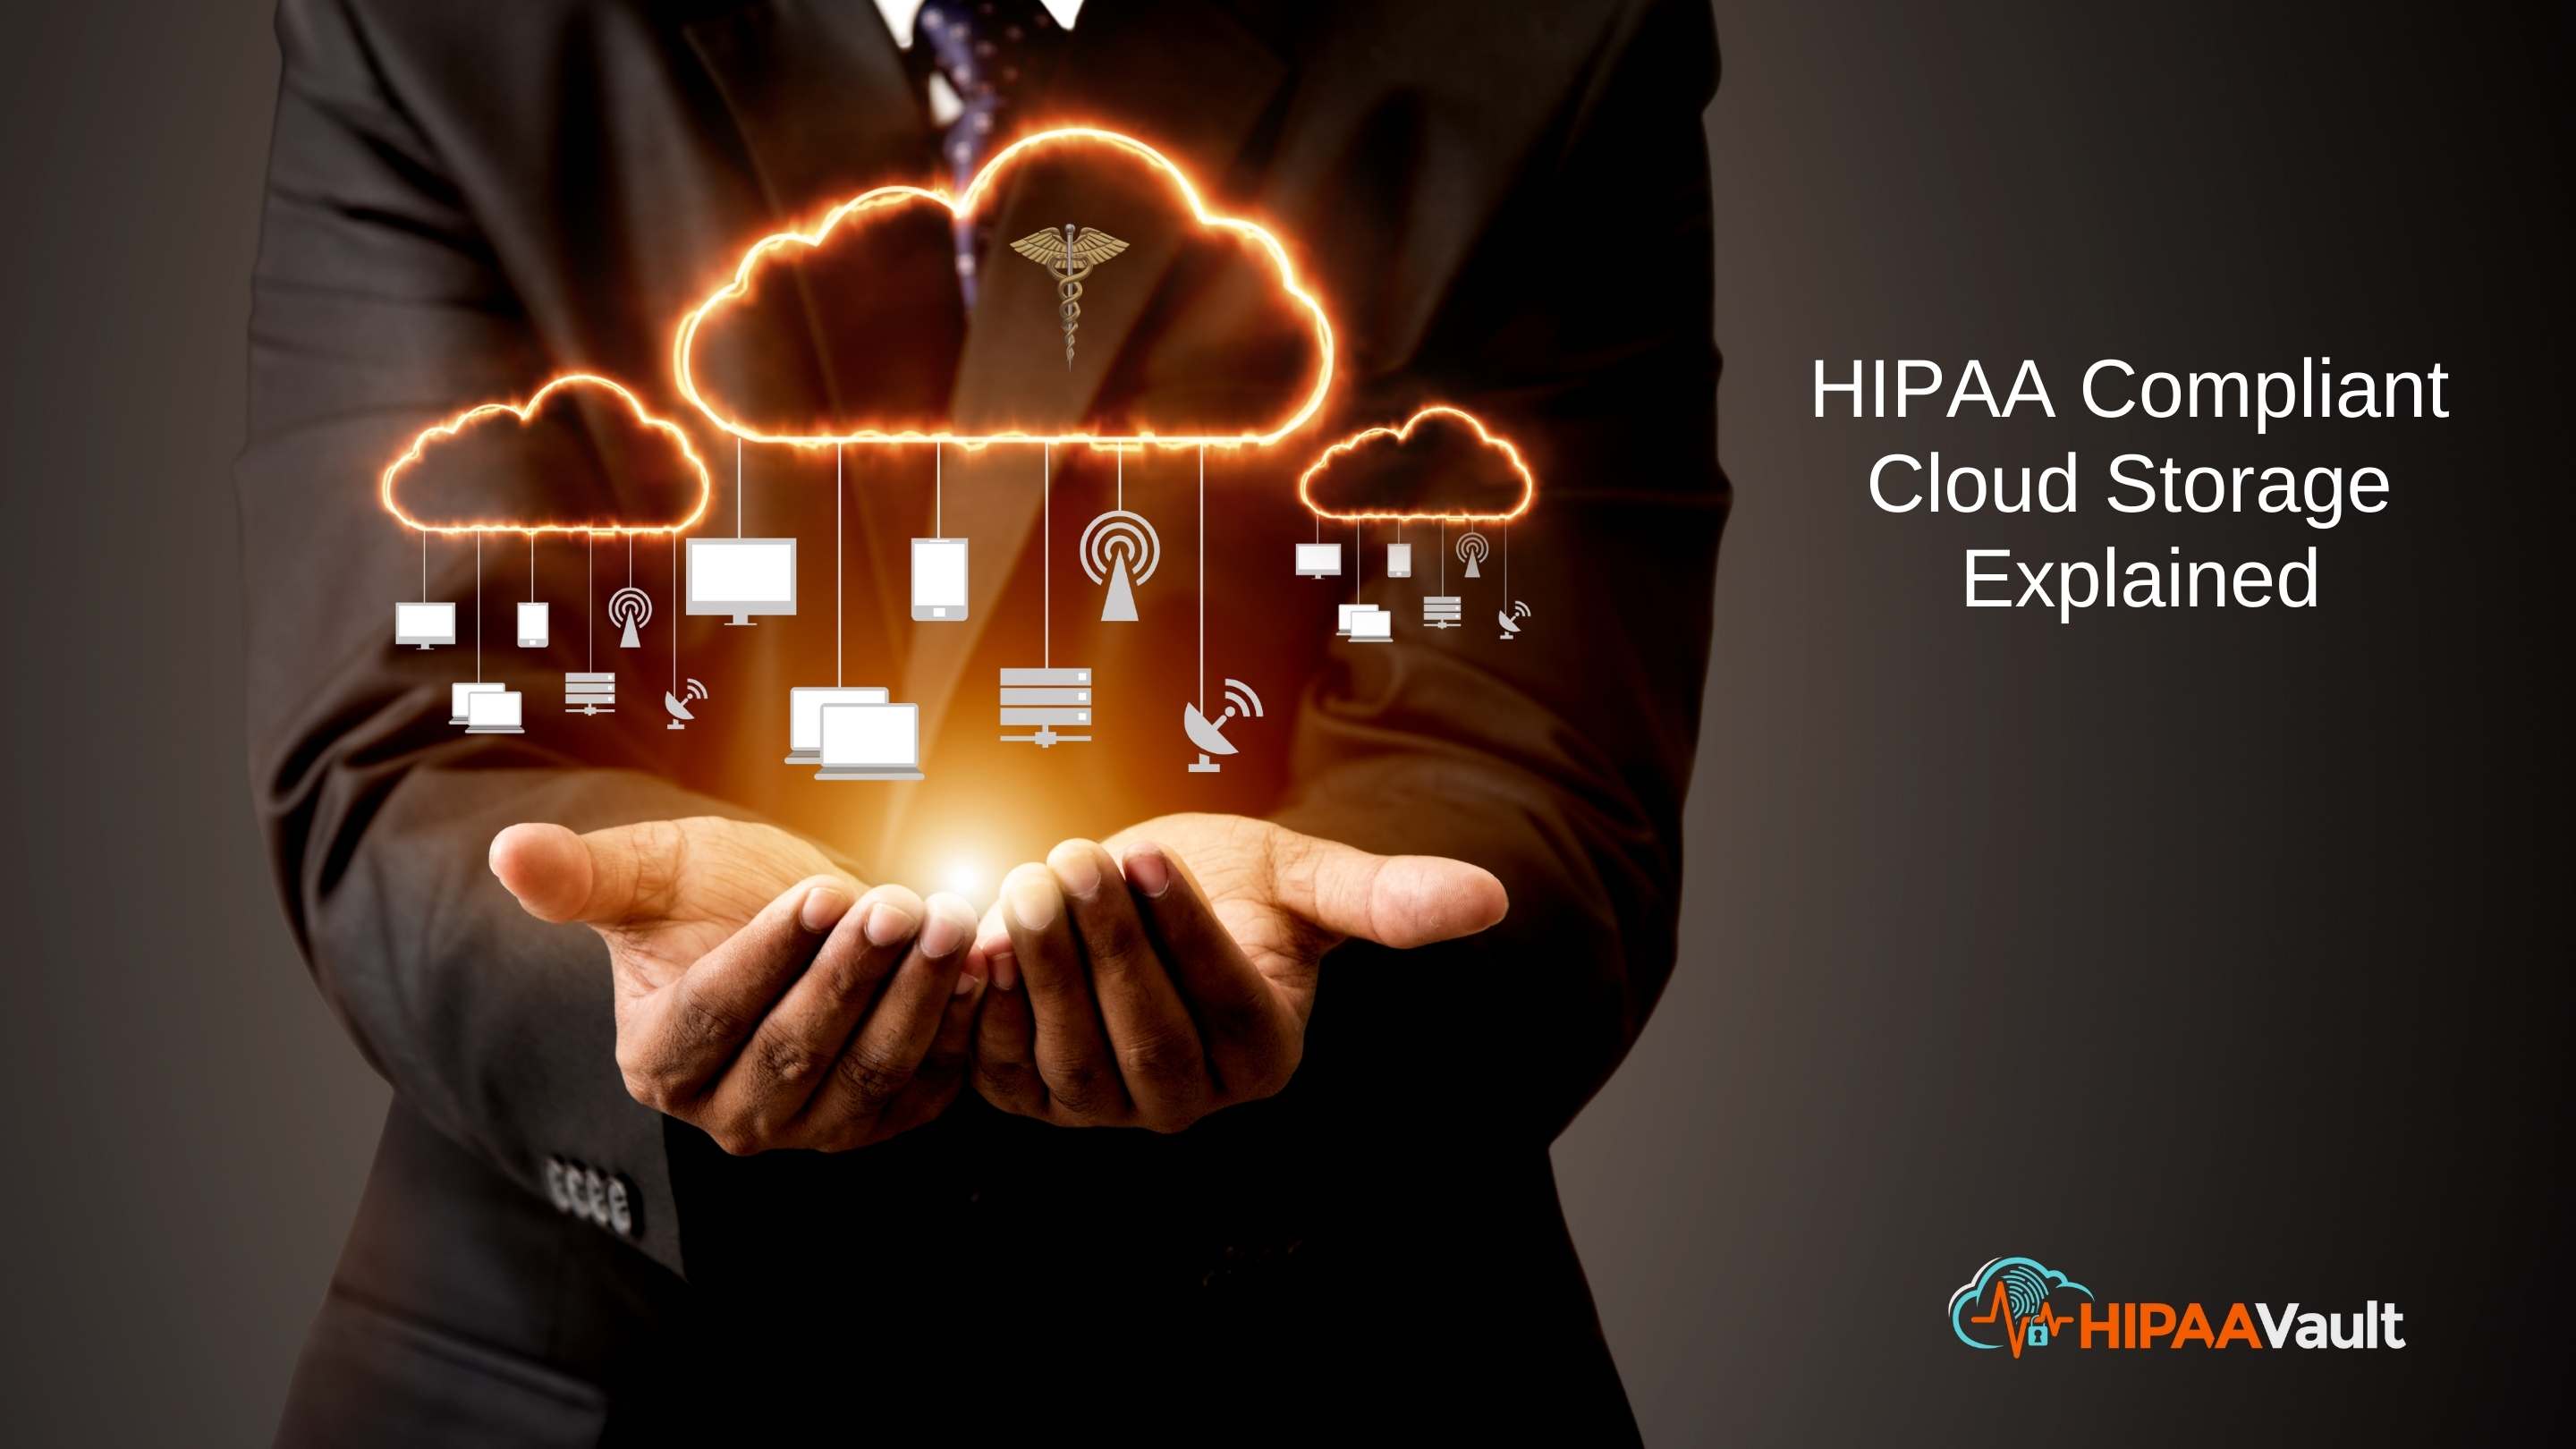 HIPAA Compliant Cloud Storage Explained